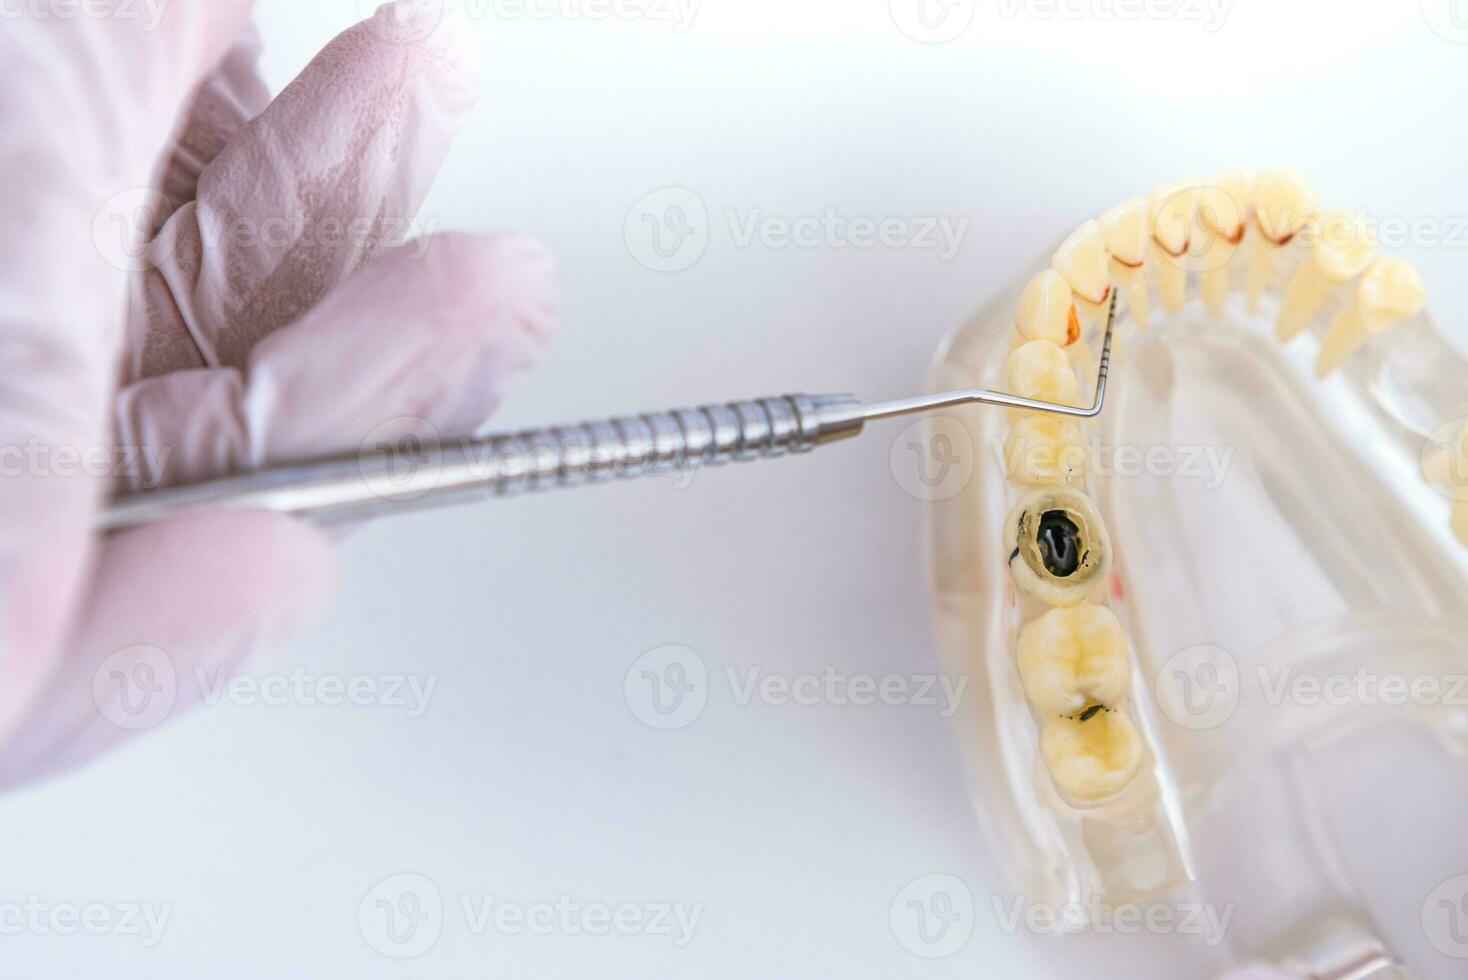 dokter orthodontist shows de instrument Aan cariës in de tanden foto